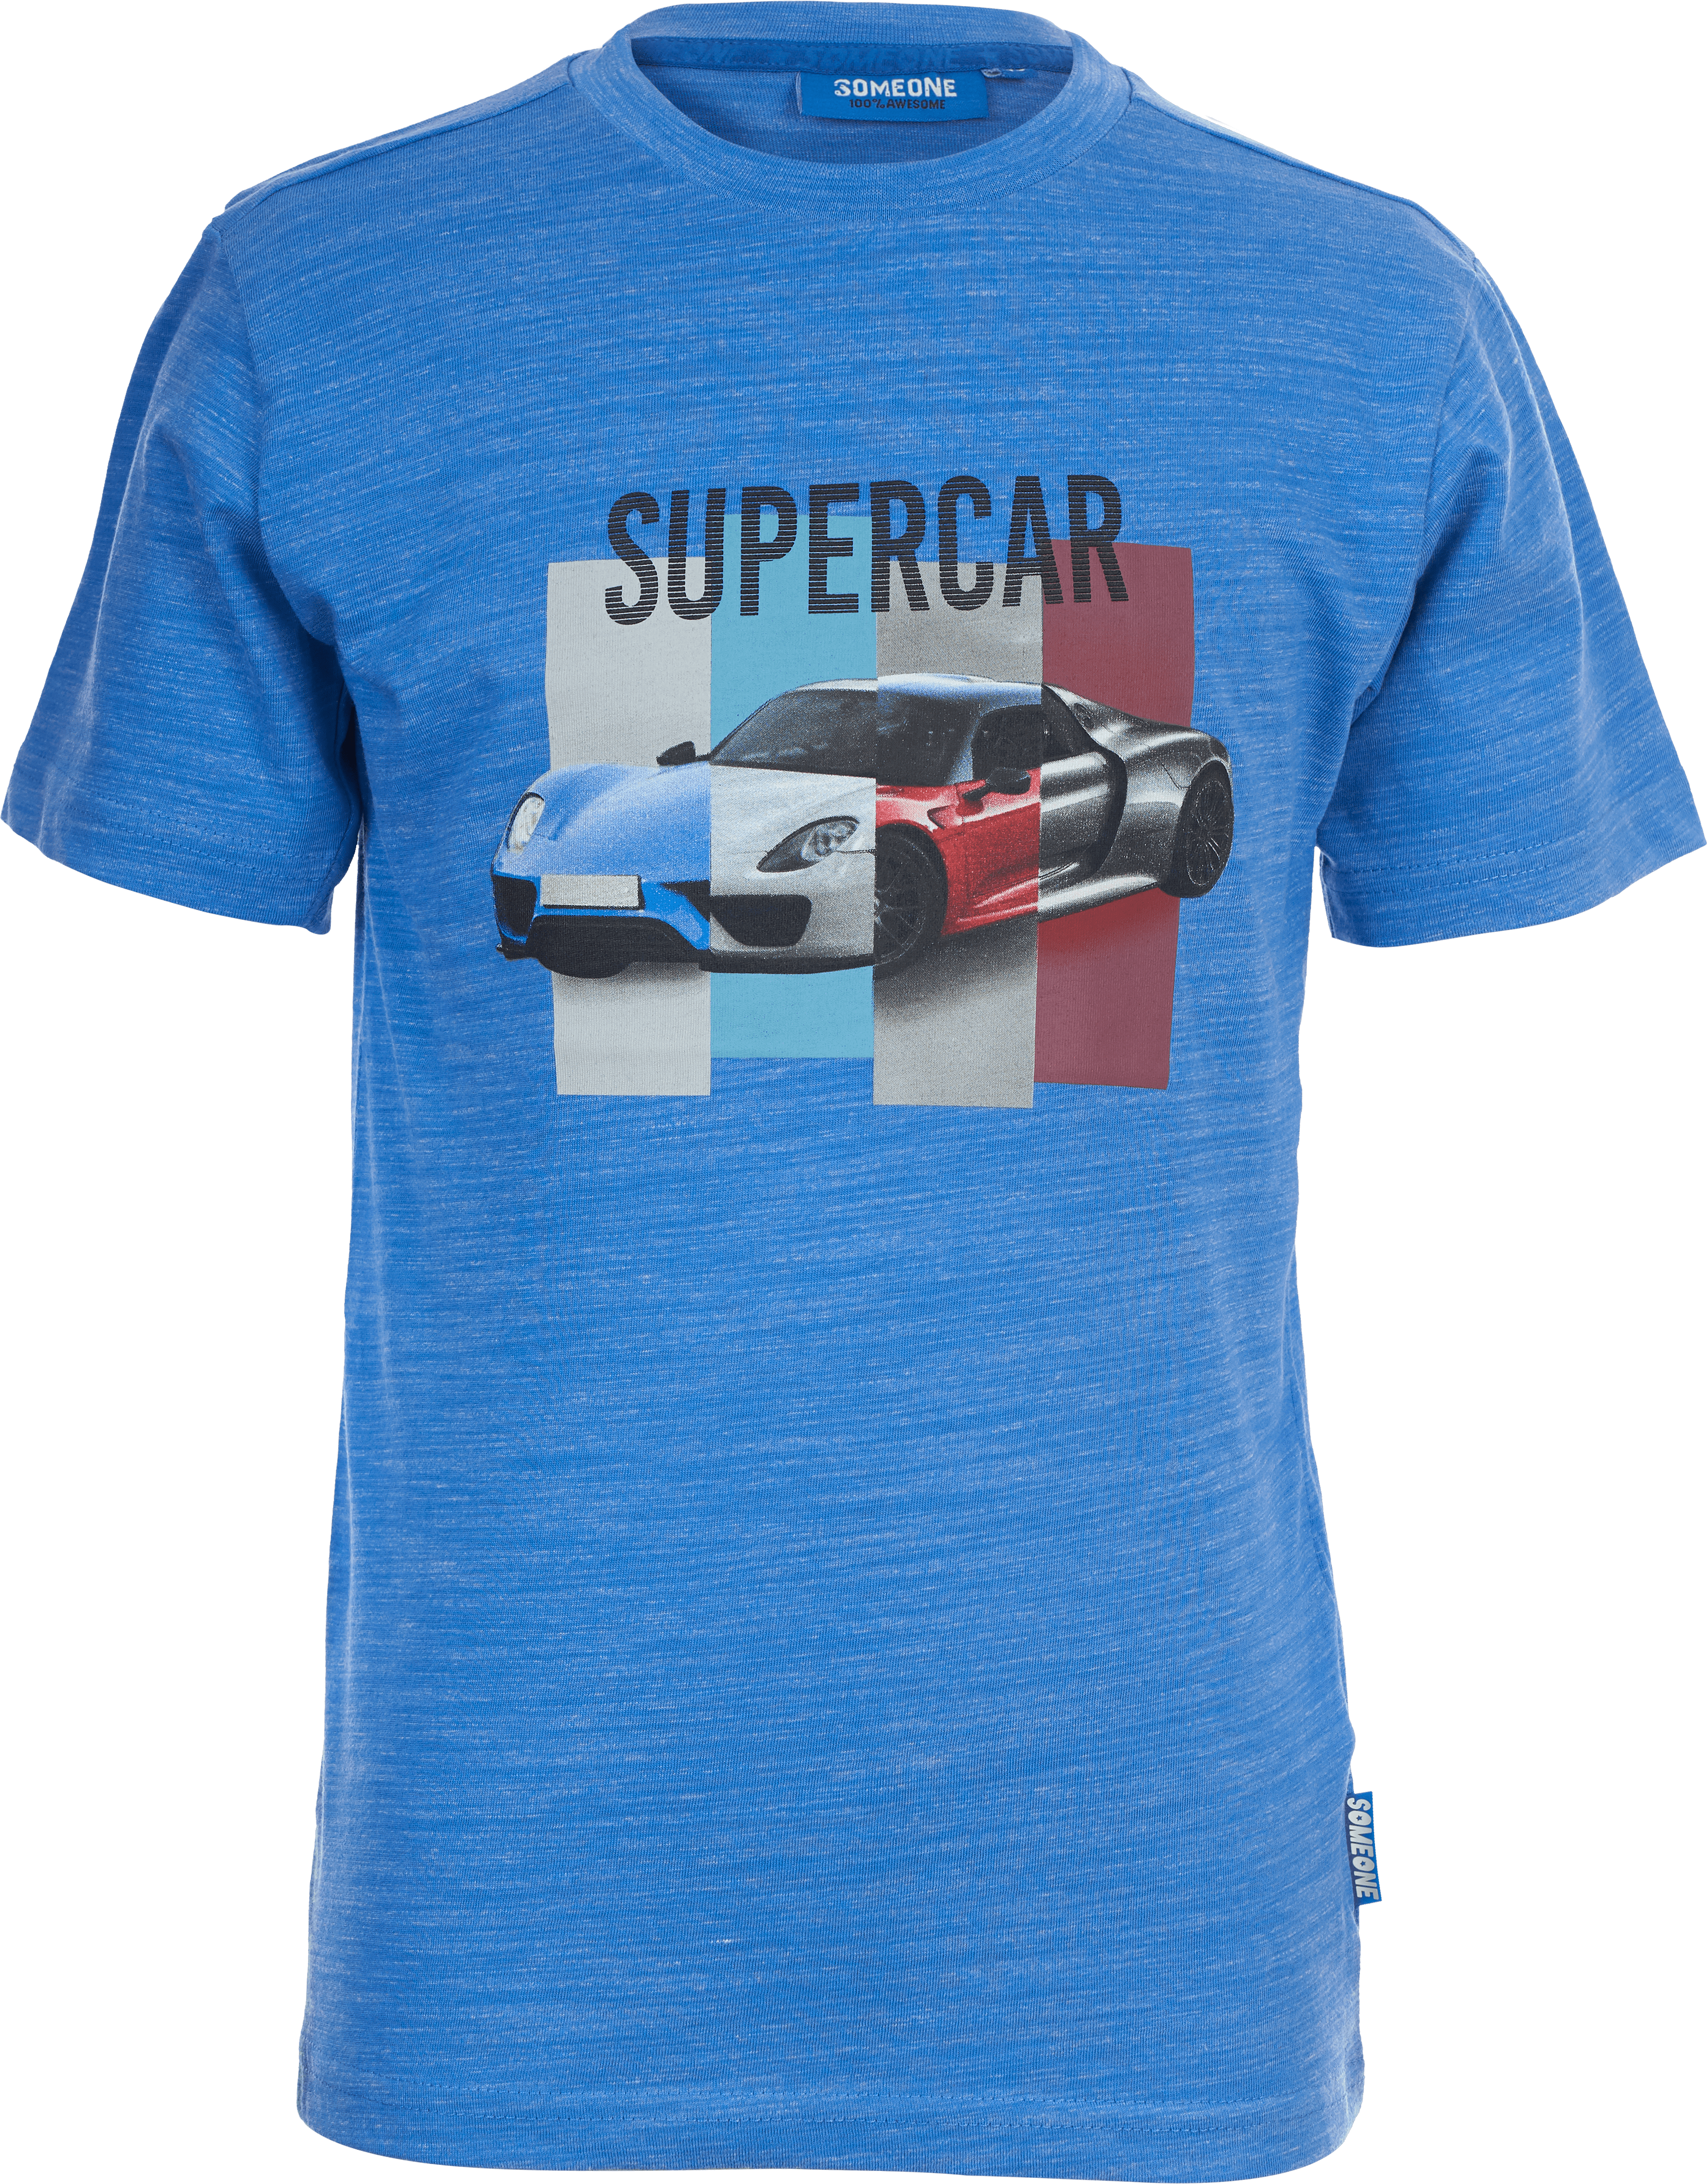 Jongens T-shirt Supercar van Someone in de kleur BRIGHT BLUE MELANGE  in maat 140.